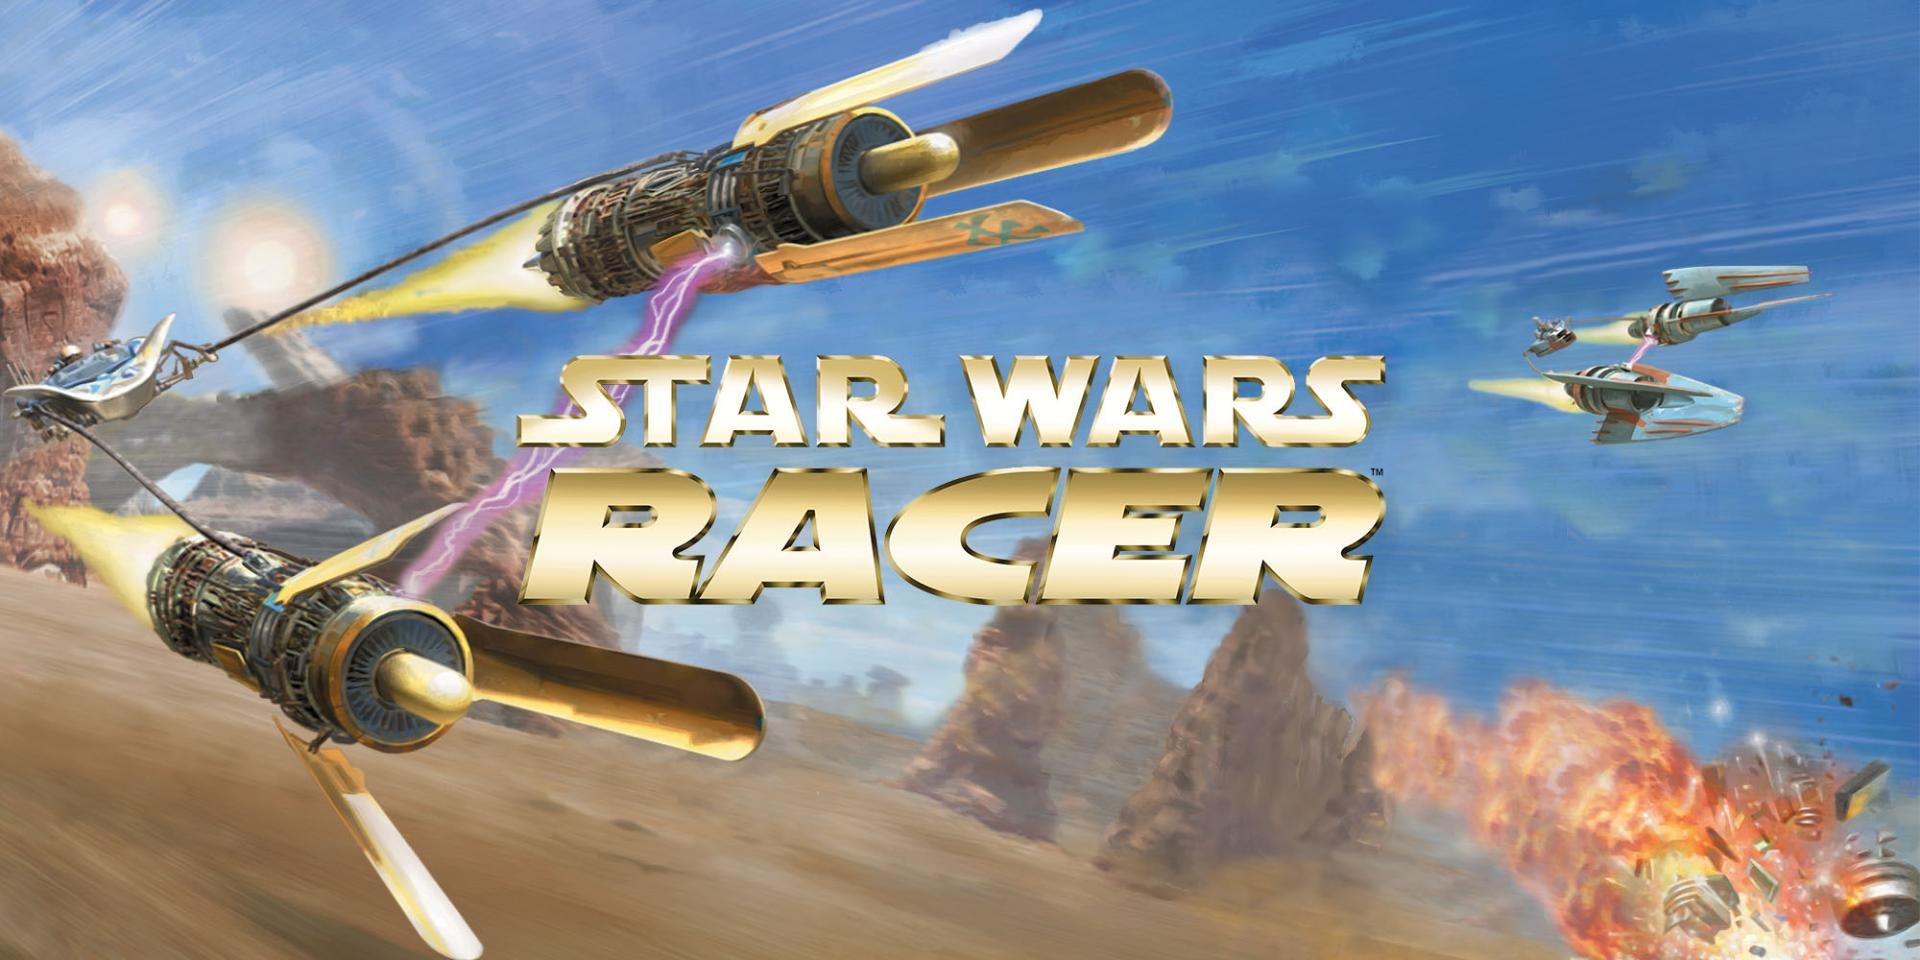 Des collections Star Wars bientôt disponibles en physique sur PS4 et Switch